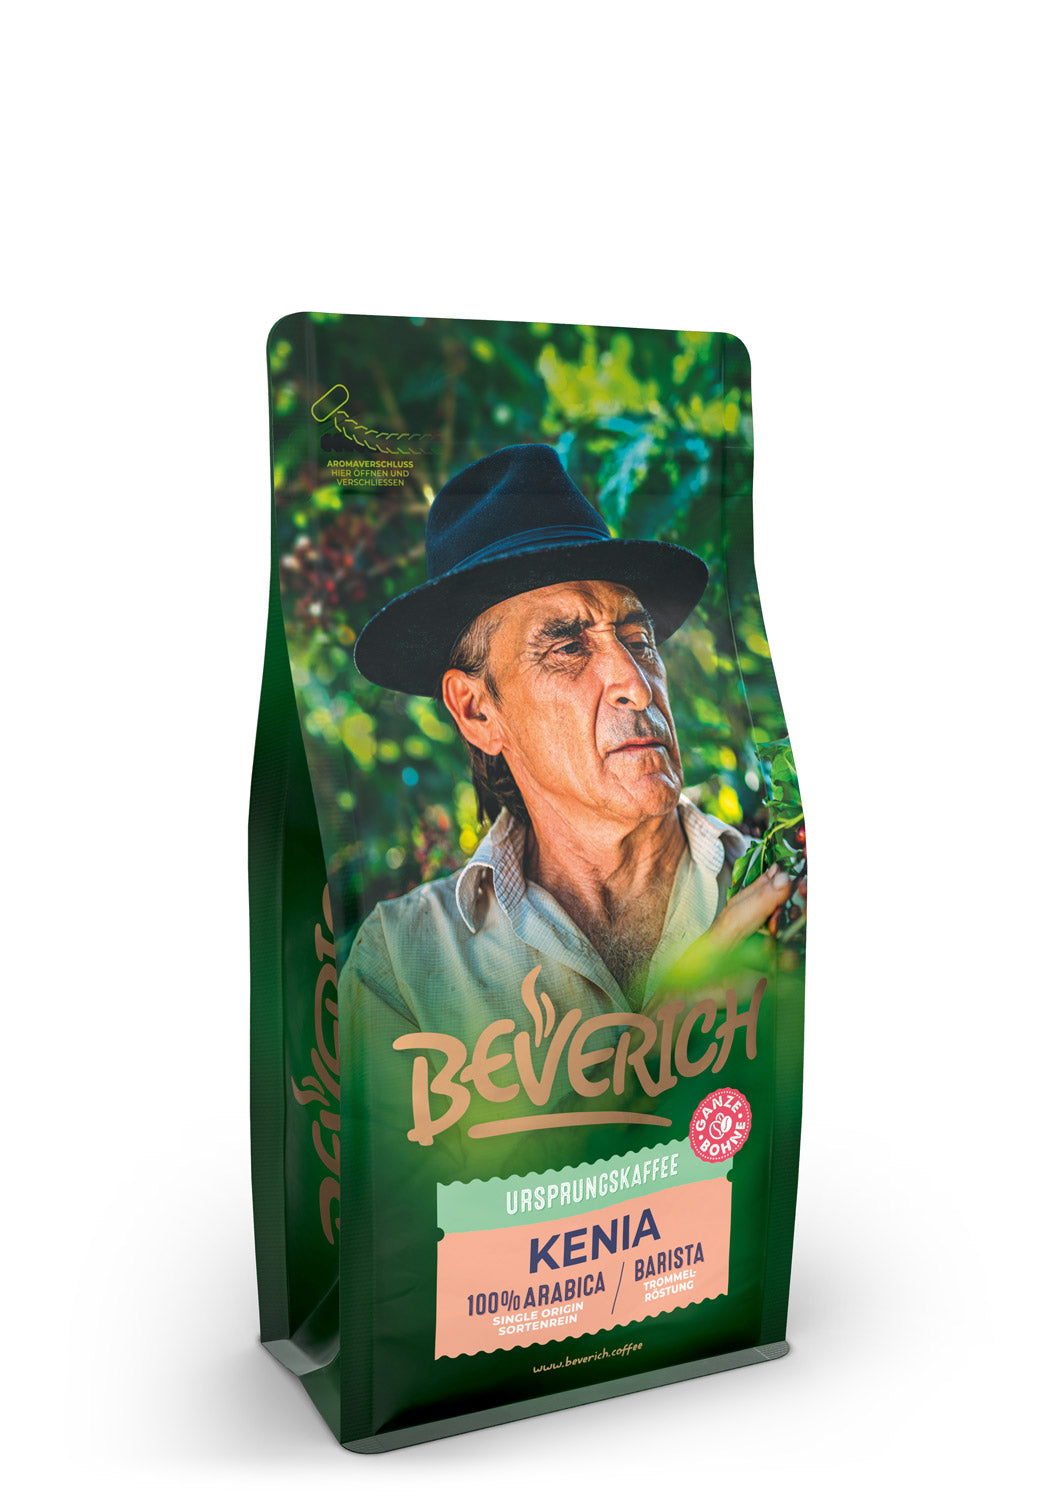 BEVERICH - Ursprungskaffee "Kenia" (250g)